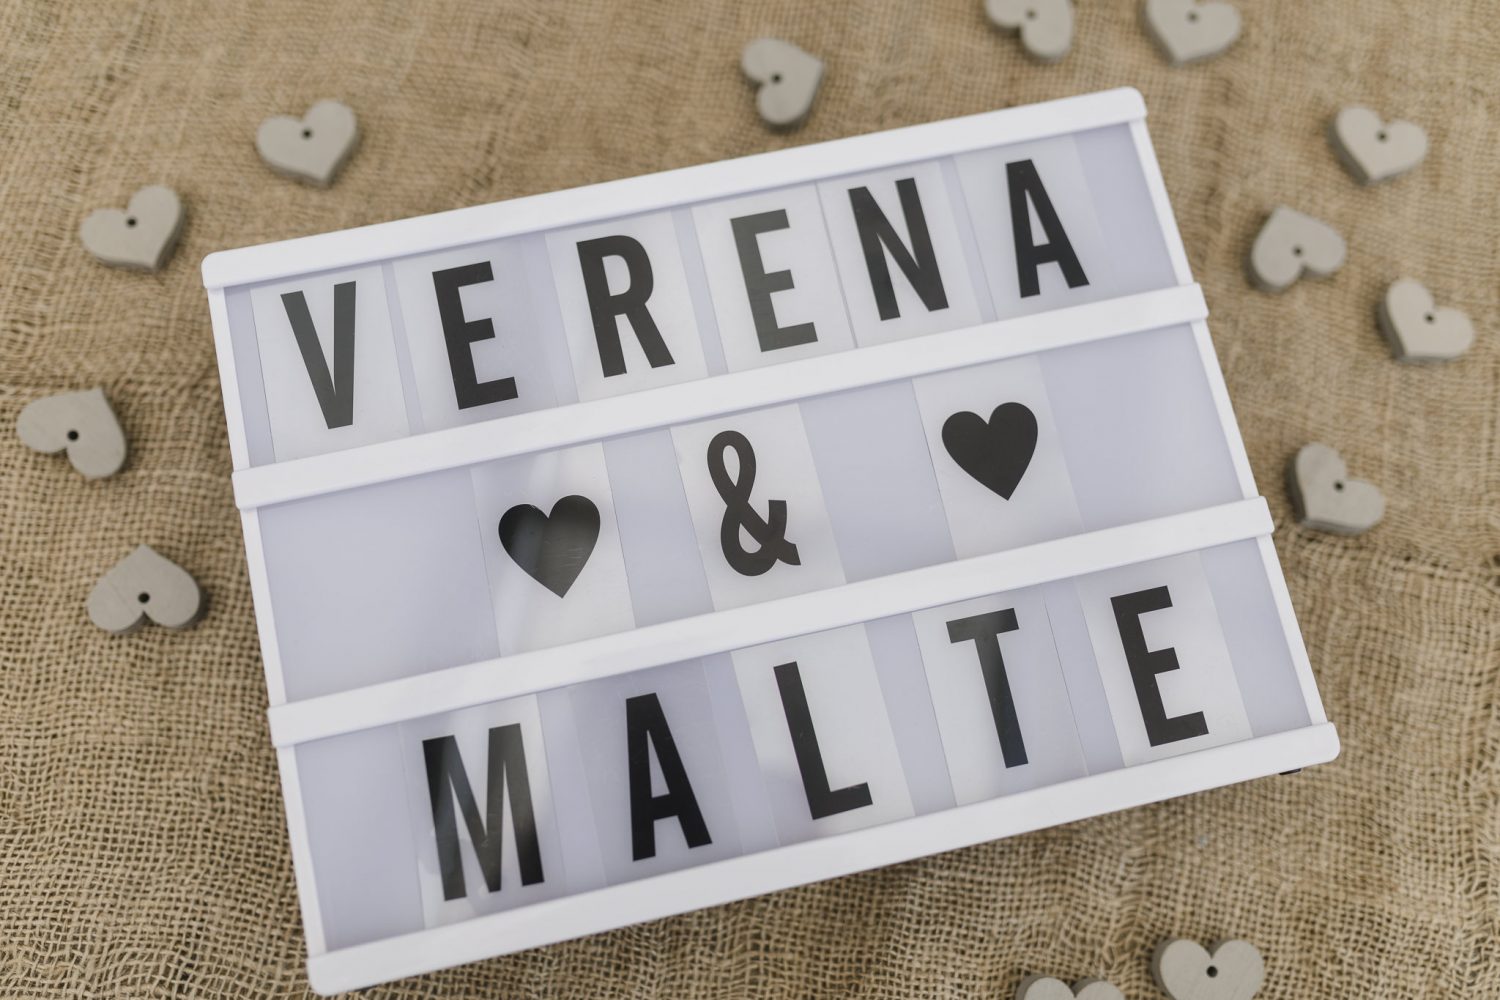 Schild mit den Namen Verena und Malte